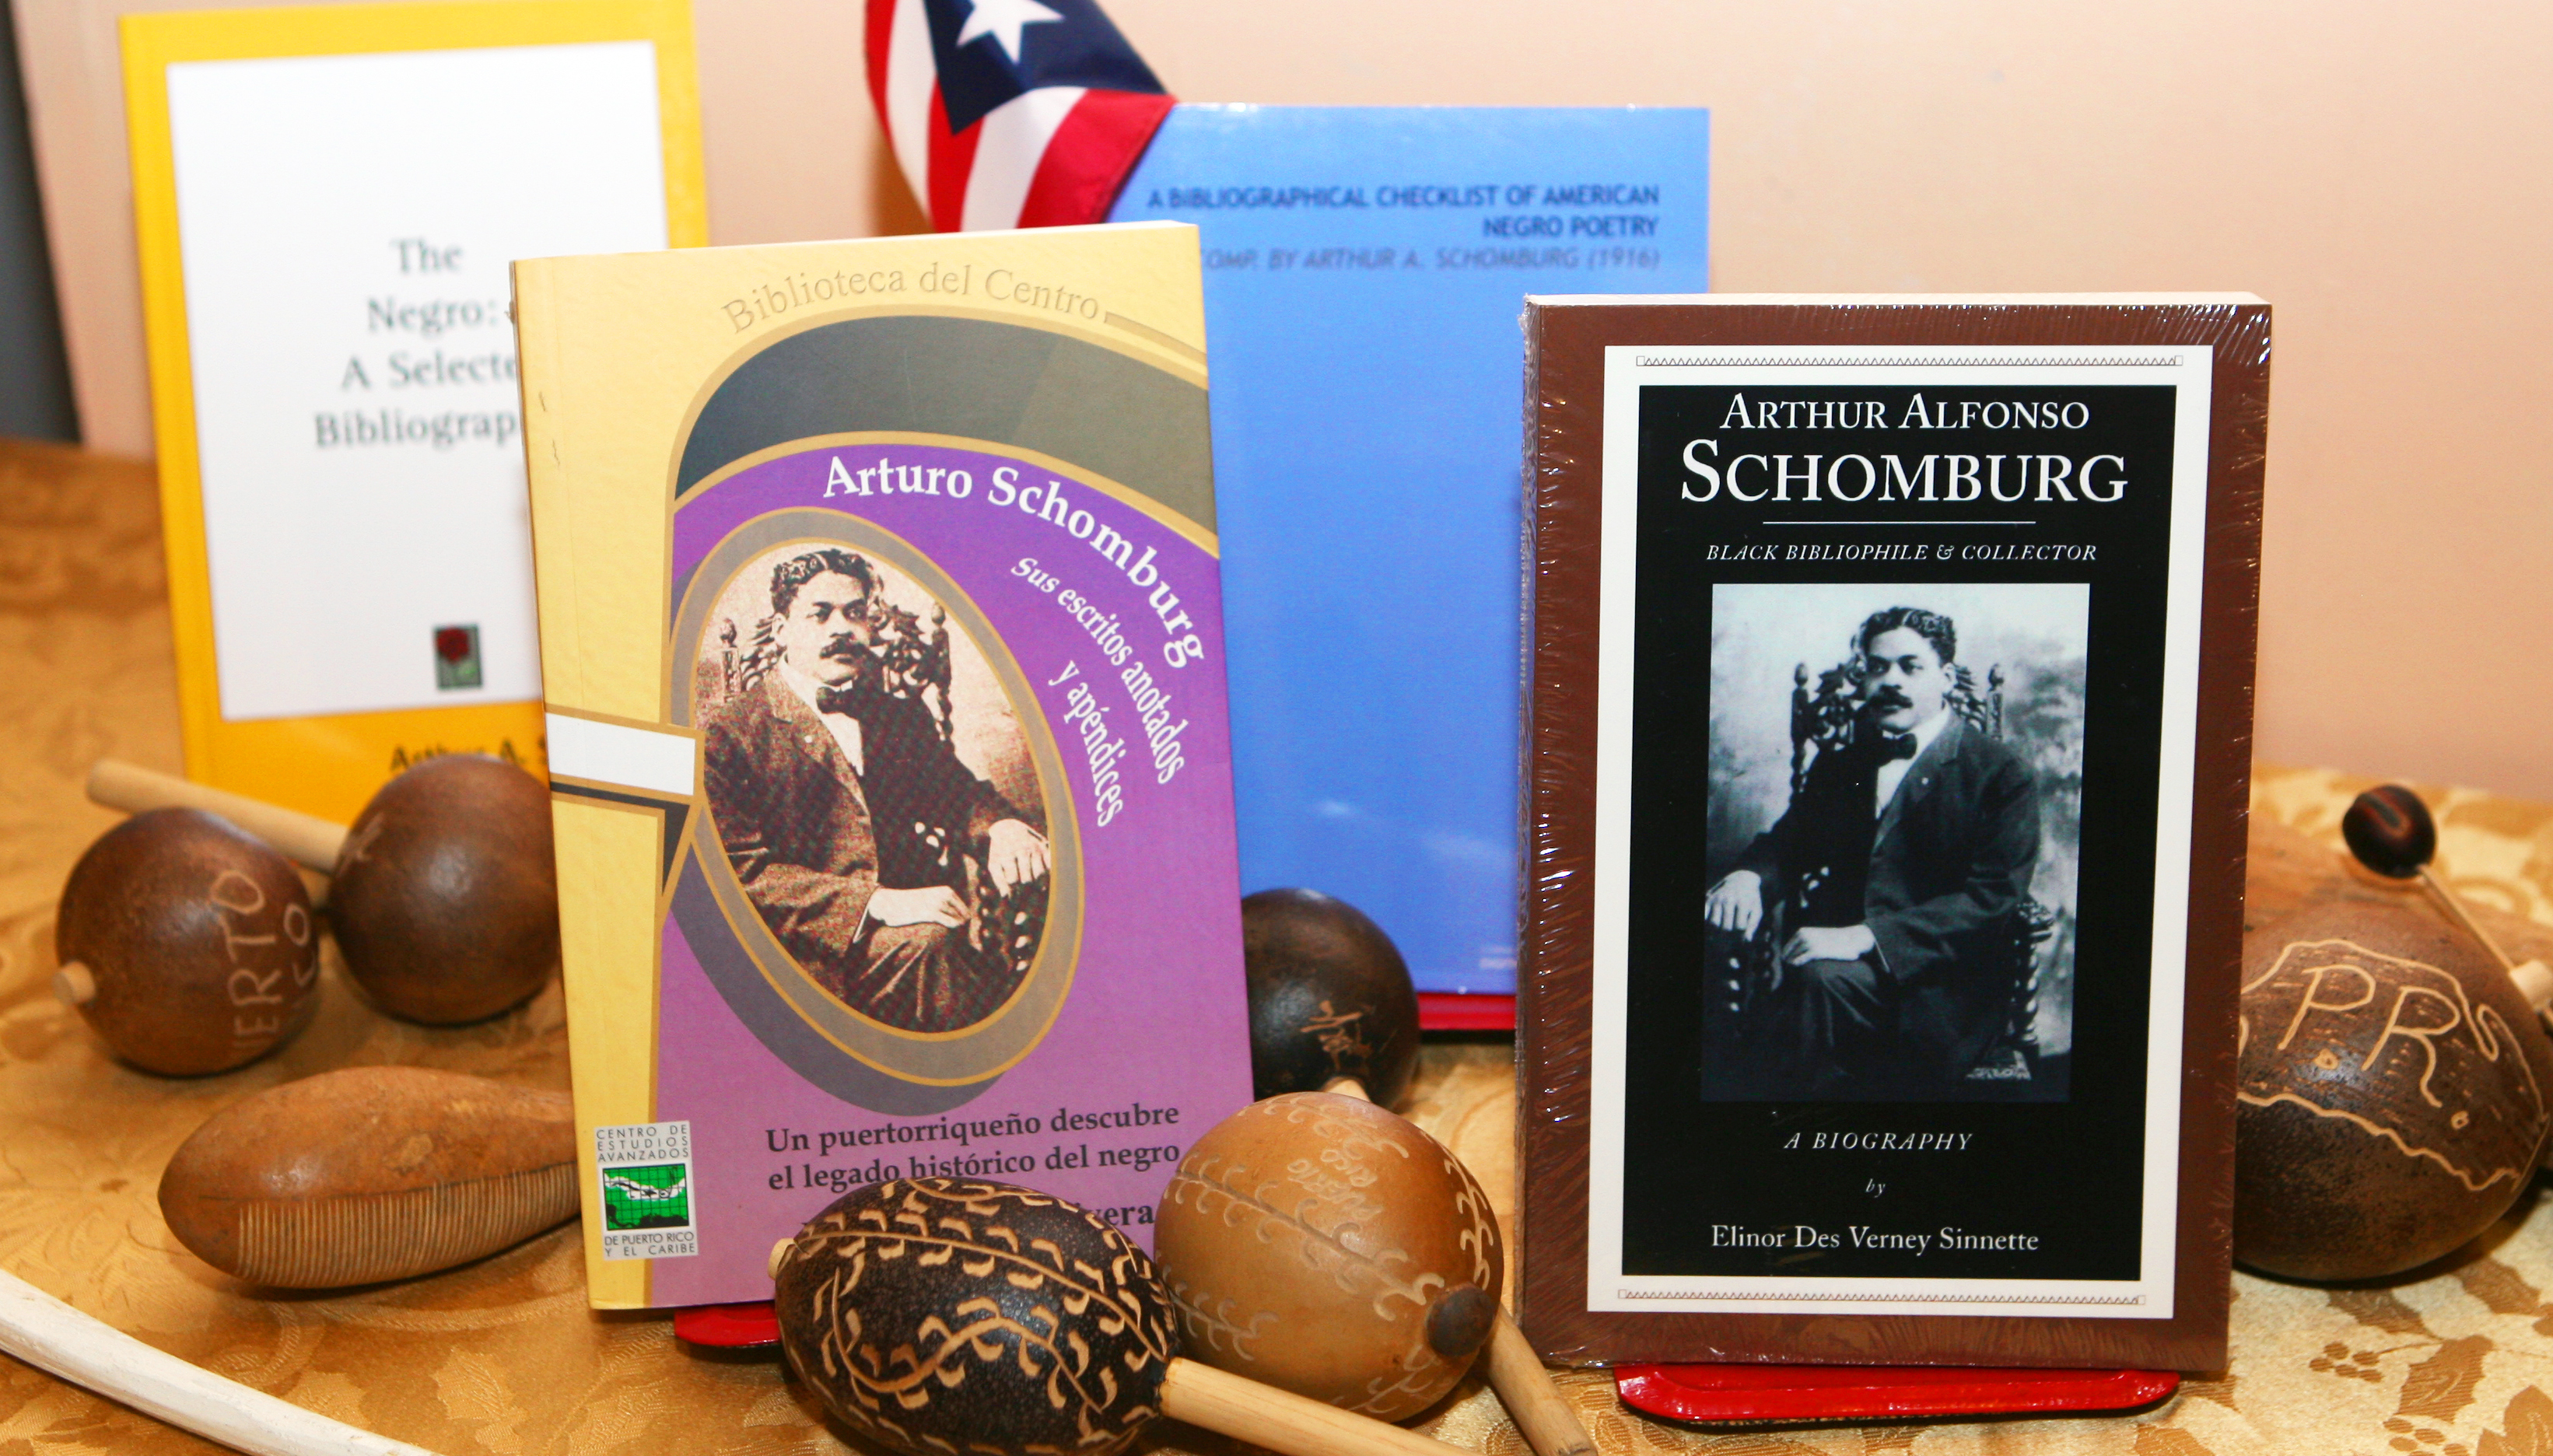 Schomburg como “uno de los bibliófilos y coleccionistas negros más reputados” quien “dedicó su vida” a recopilar materiales que documentan la vida negra.